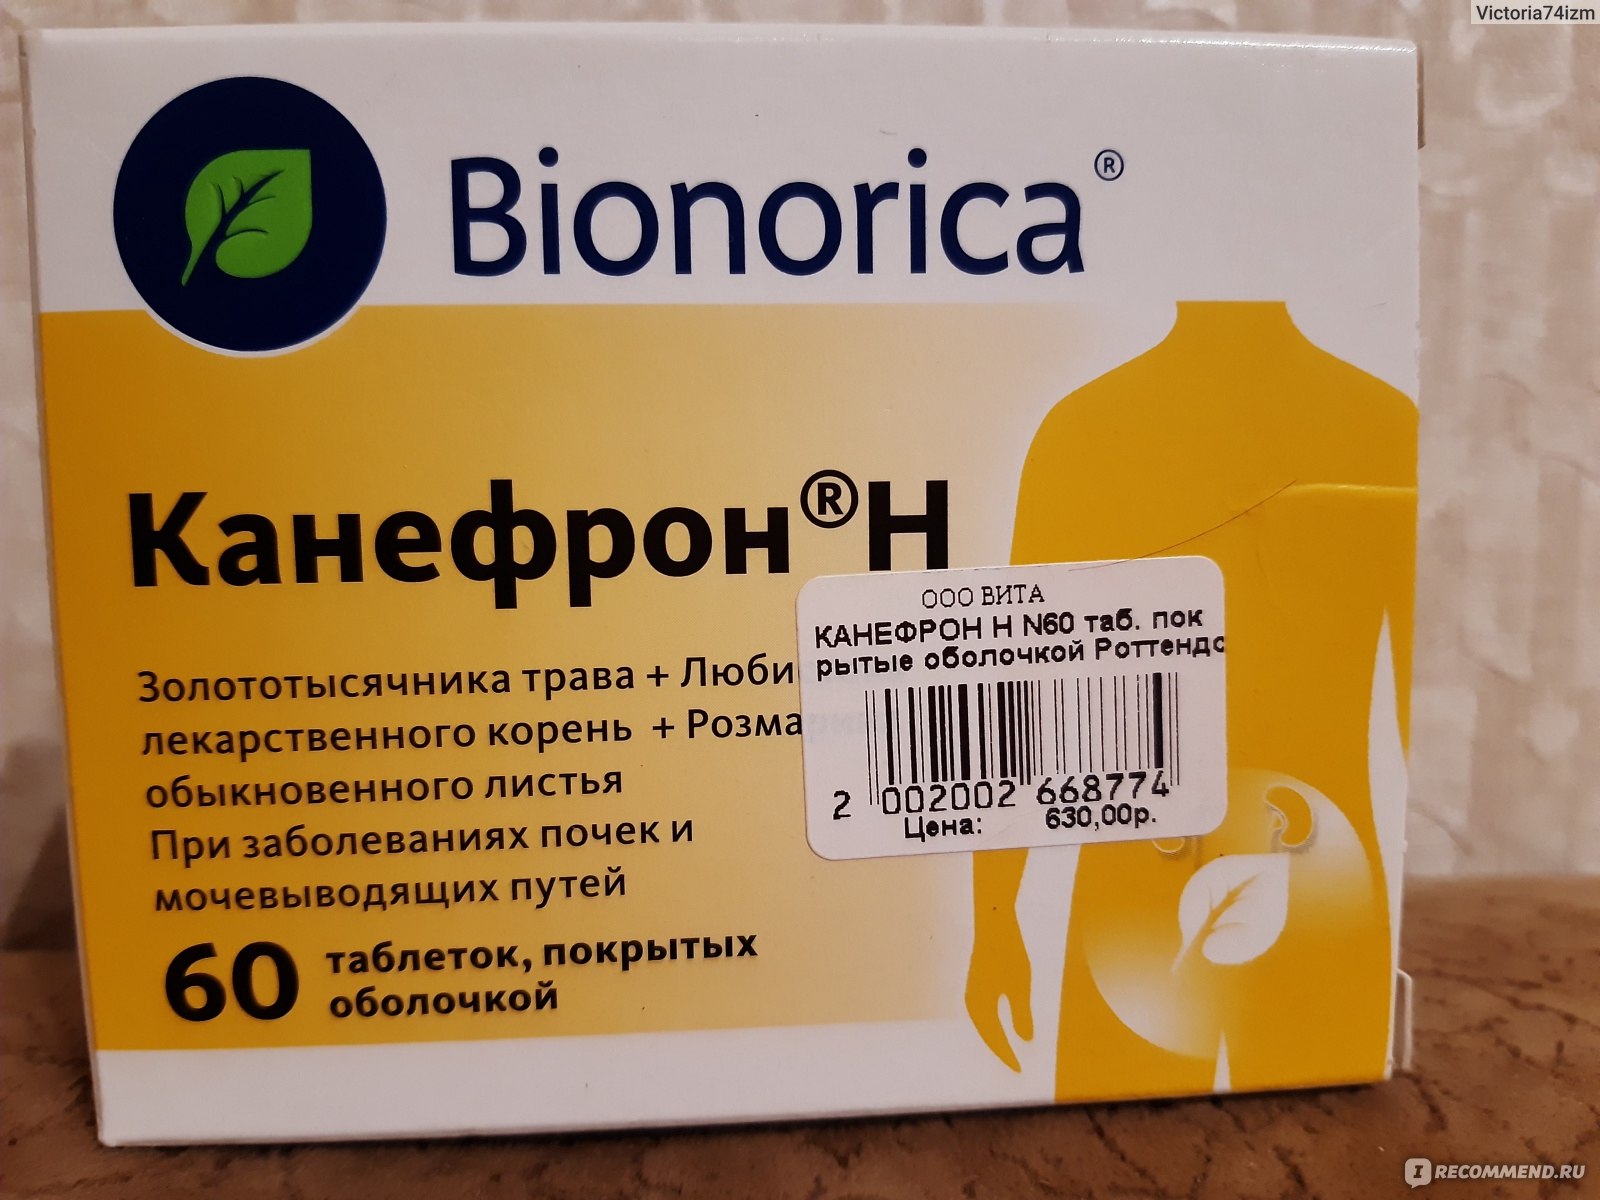 Лекарства В Аптеках Москвы Недорого